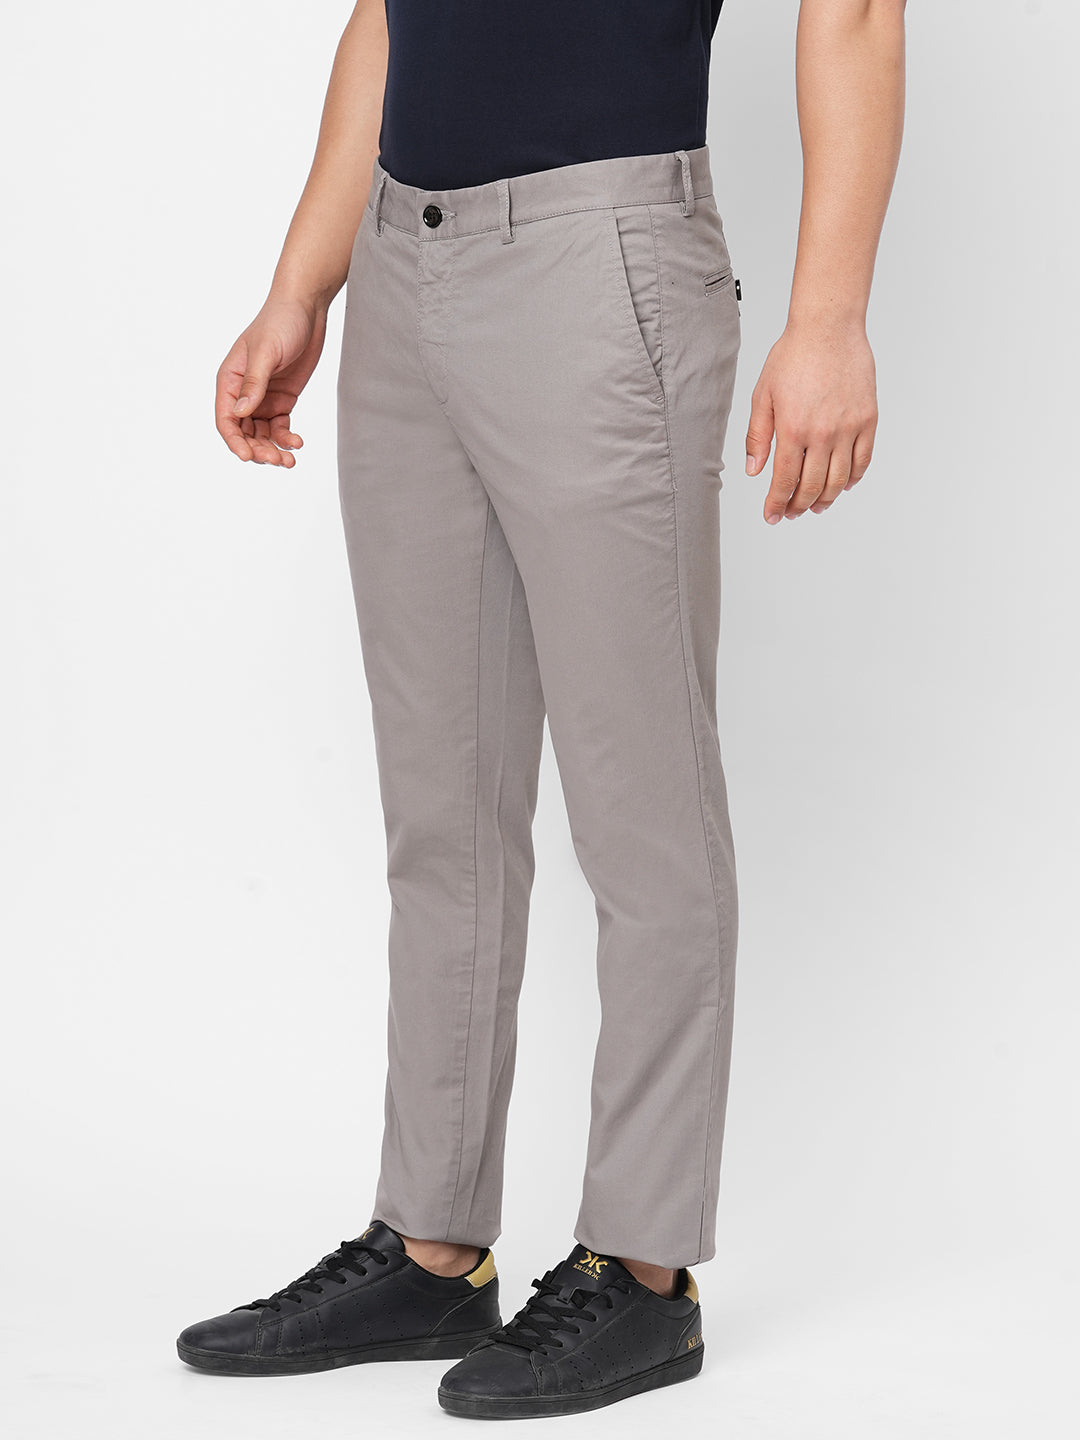 5 Pocket Pant Slim Fit in Khaki  Marine Layer